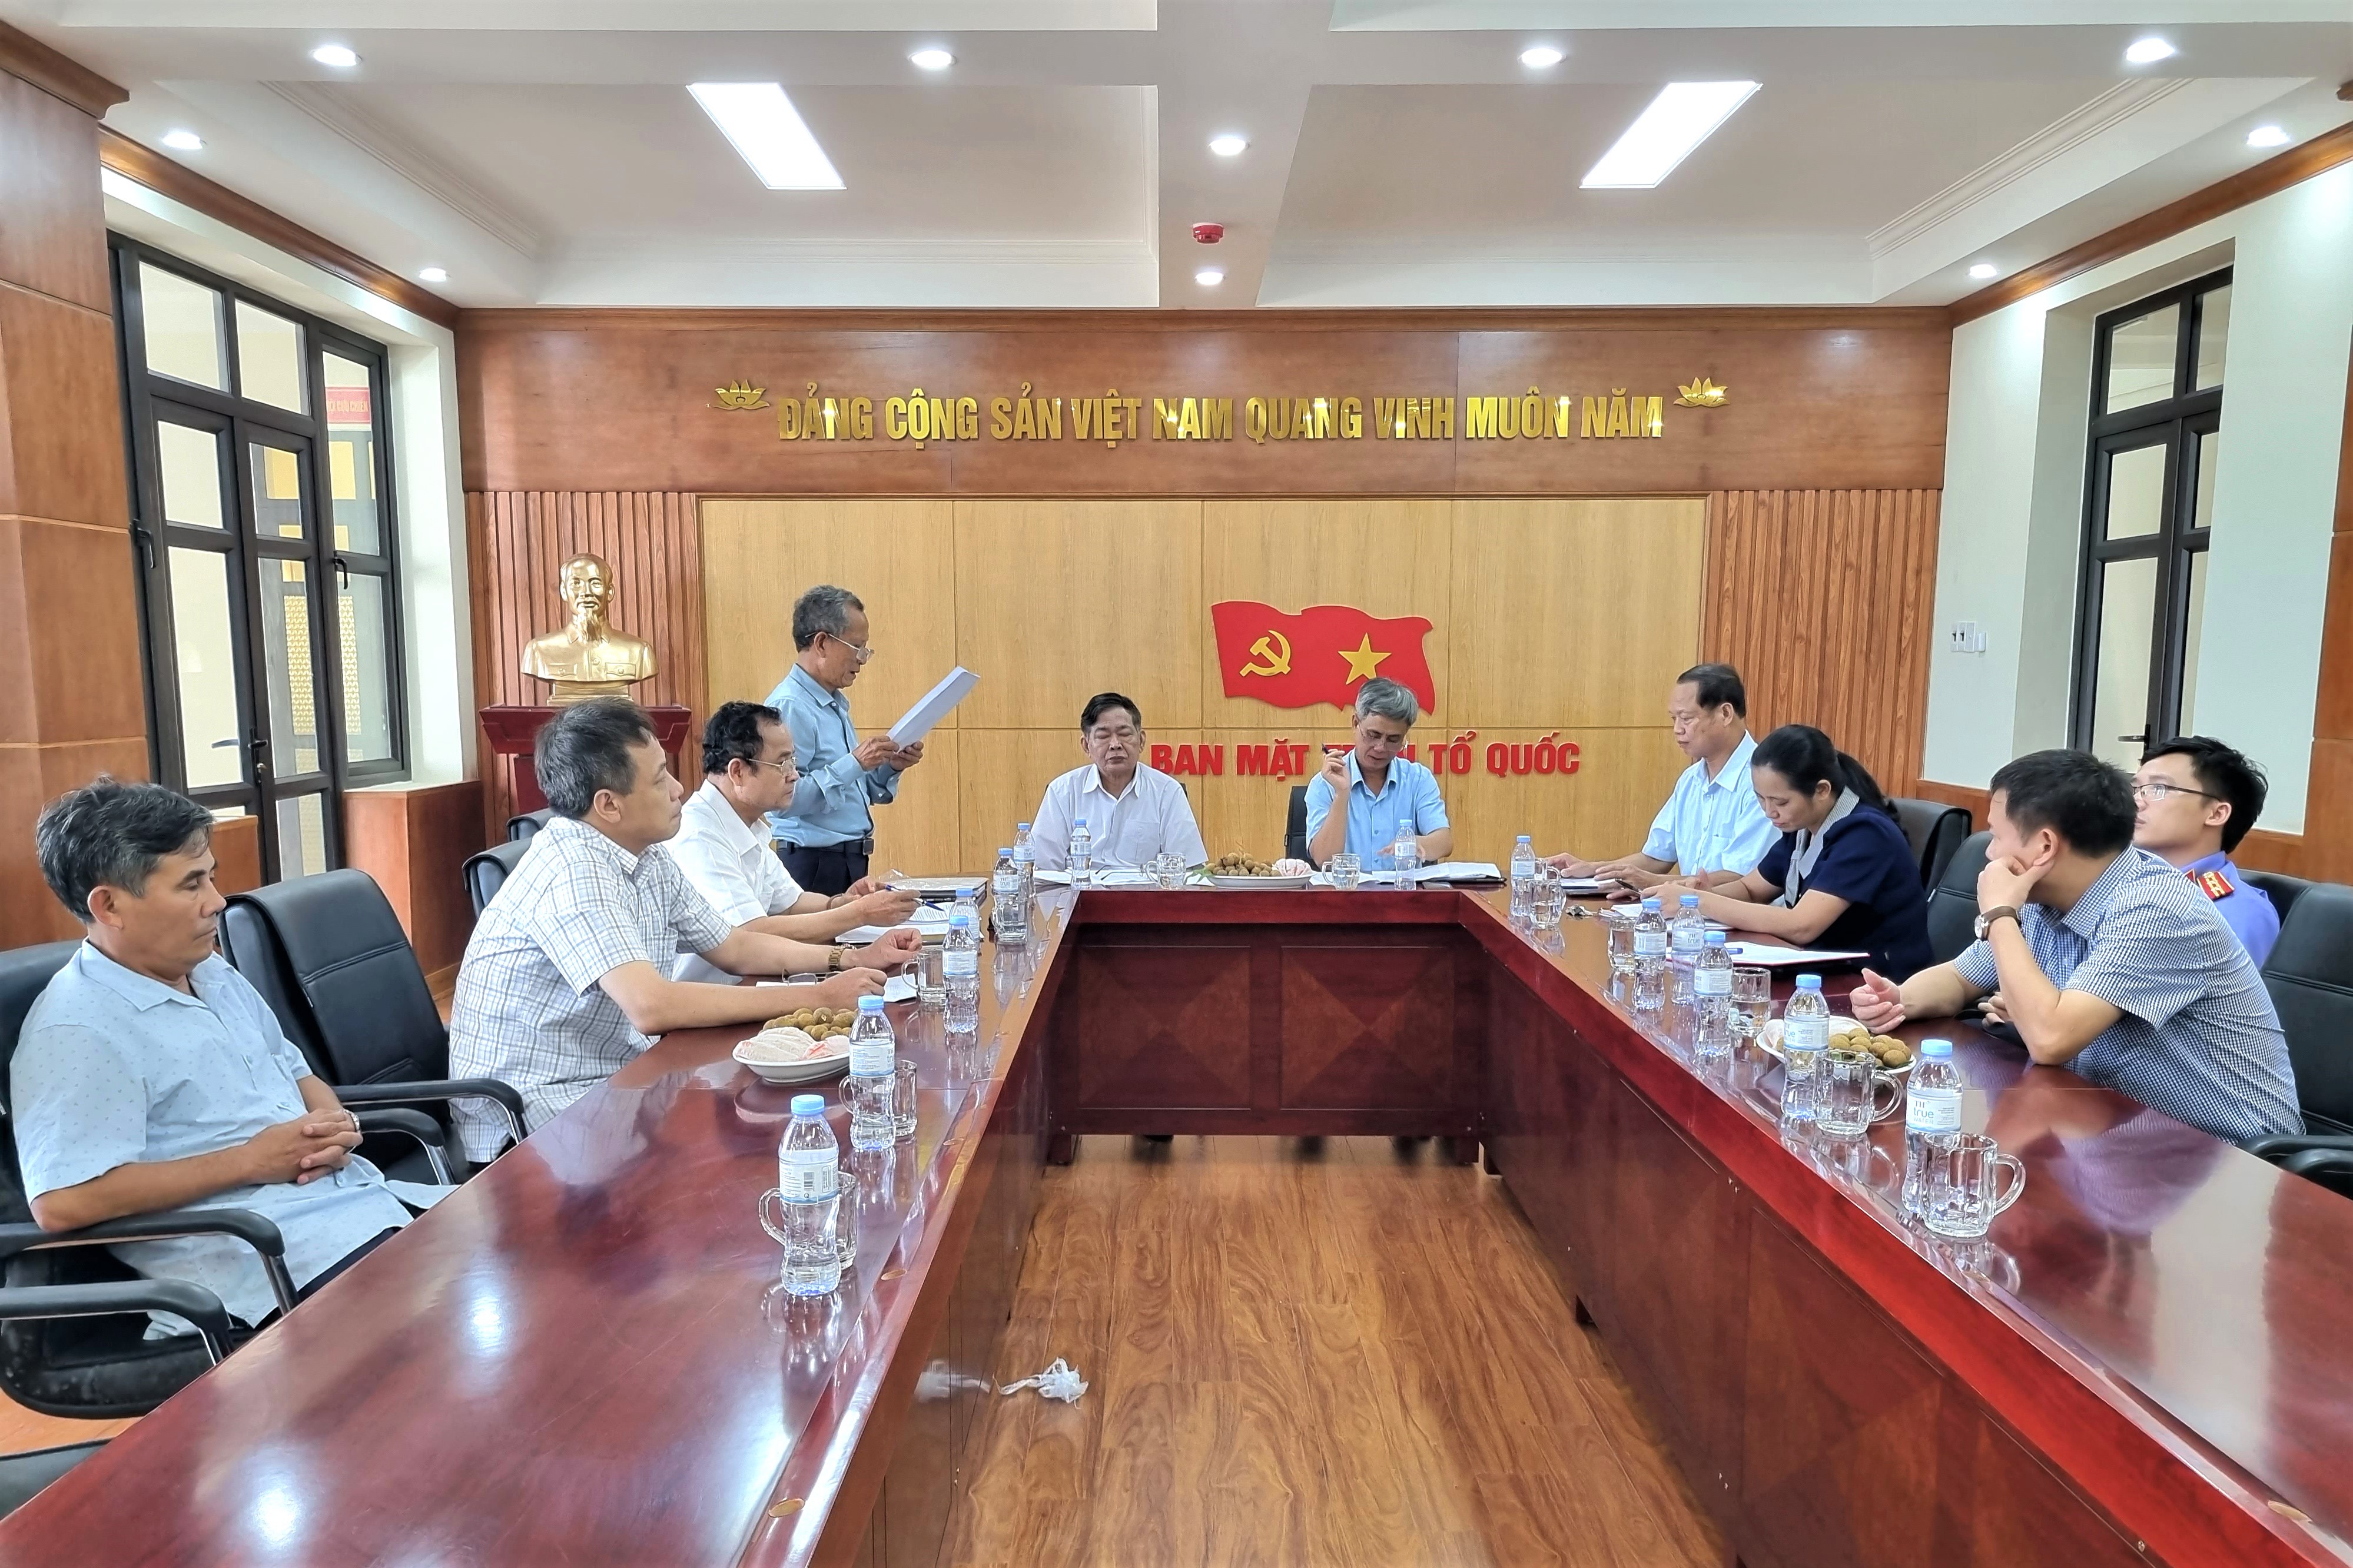 Nâng cao chất lượng, hiệu quả hoạt động của Hội Luật gia huyện Triệu Sơn